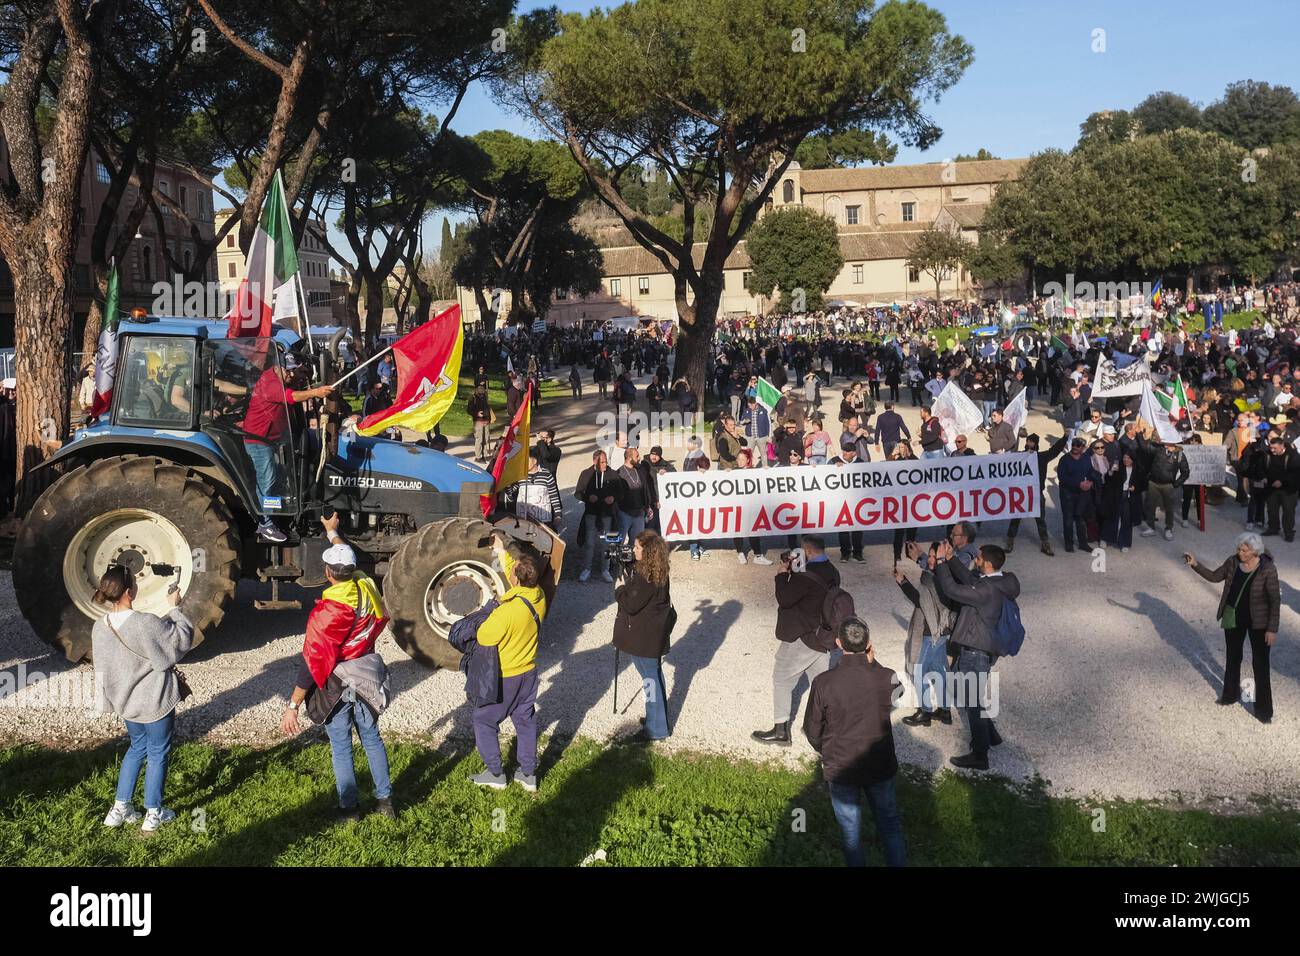 Notizie - dimostrazioni degli agricoltori a Roma gli agricoltori organizzano dimostrazioni in tutta Italia per settimane per chiedere tasse più basse sul carburante, prezzi migliori per i loro prodotti, e un allentamento delle normative ambientali dell'UE che, secondo loro, rendono più difficile competere con prodotti stranieri meno costosi. Oggi, 15 febbraio 2024, si sono riuniti in una manifestazione nazionale a roma al circo massimo e al campidoglio.& XA Roma Italia Copyright: XAntonioxBalascox/xLiveMediax LPN 1237669 Foto Stock